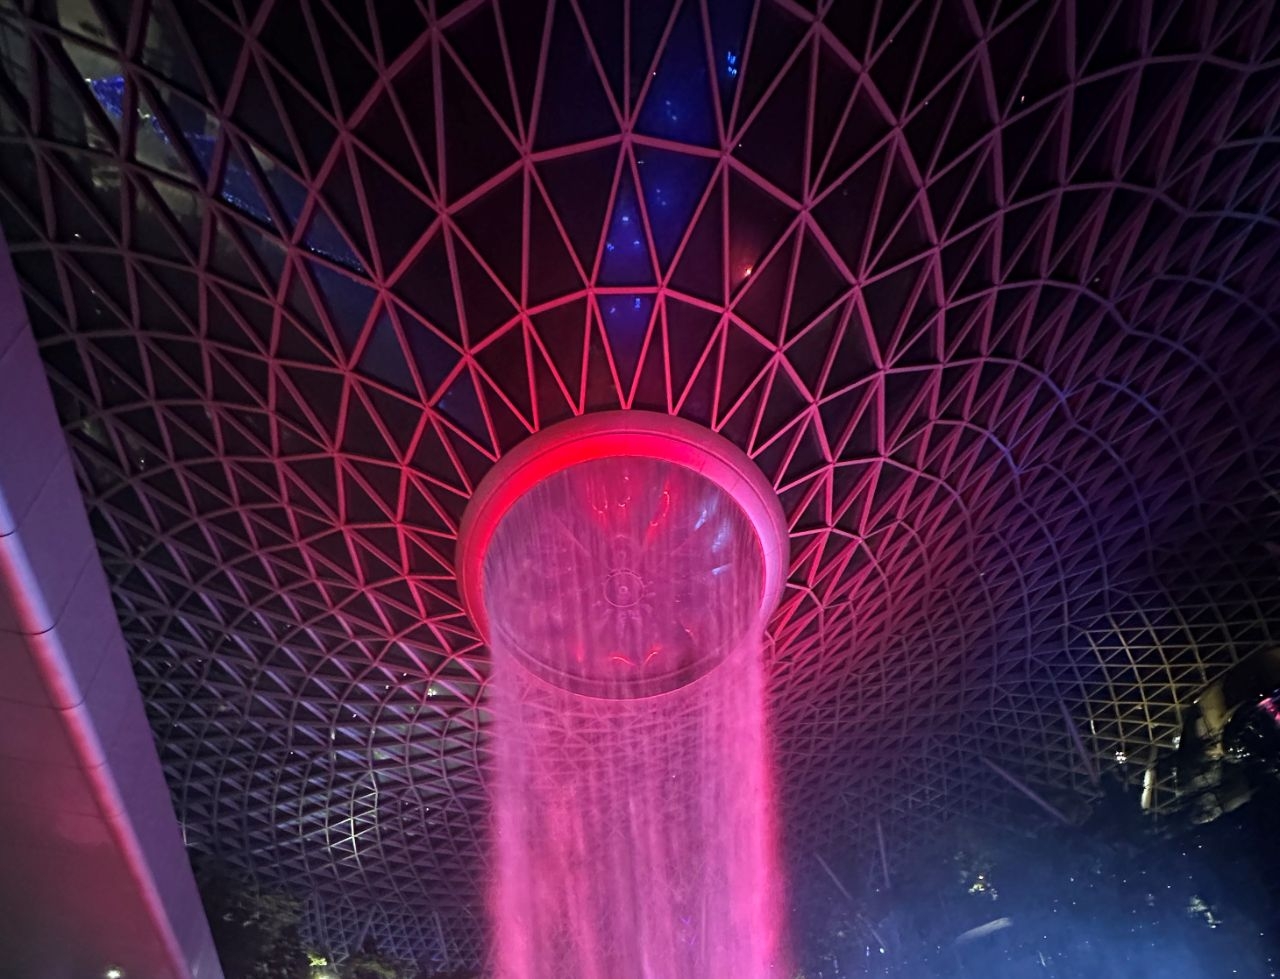 Свето-музыкальные фонтаны Marina Bay Sands Сингапур (столица), Сингапур (город-государство)